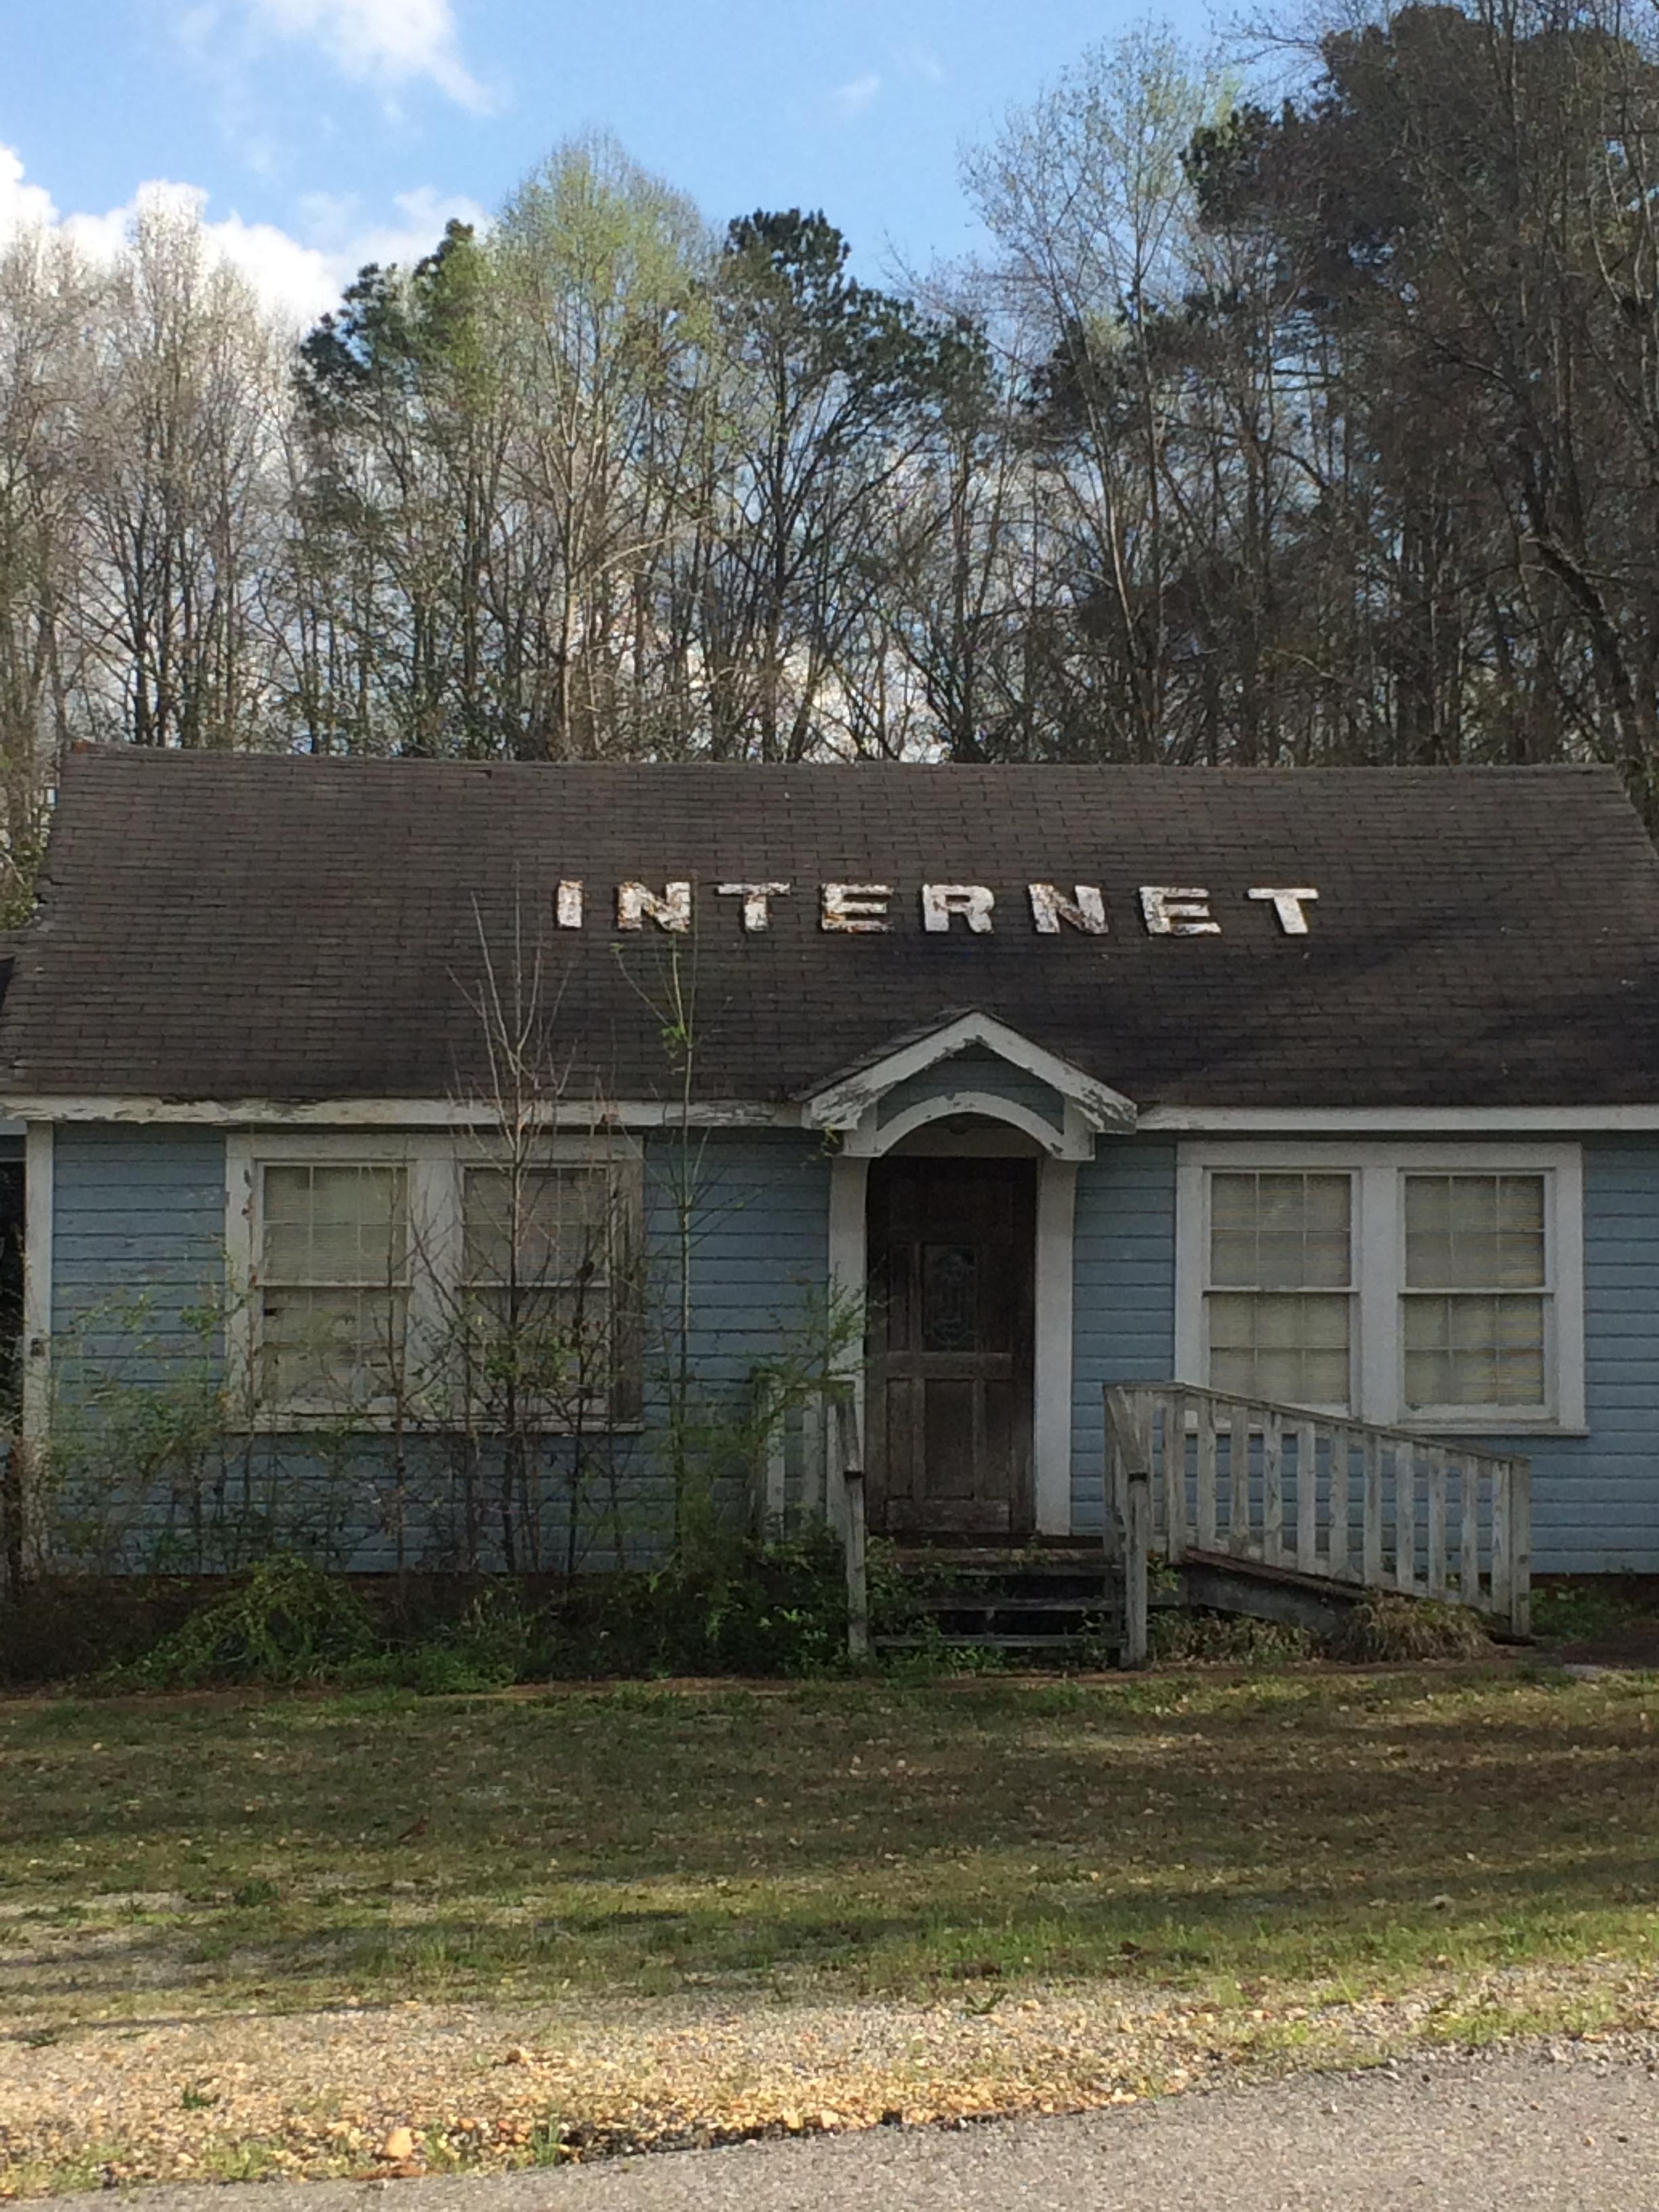 house - Internet